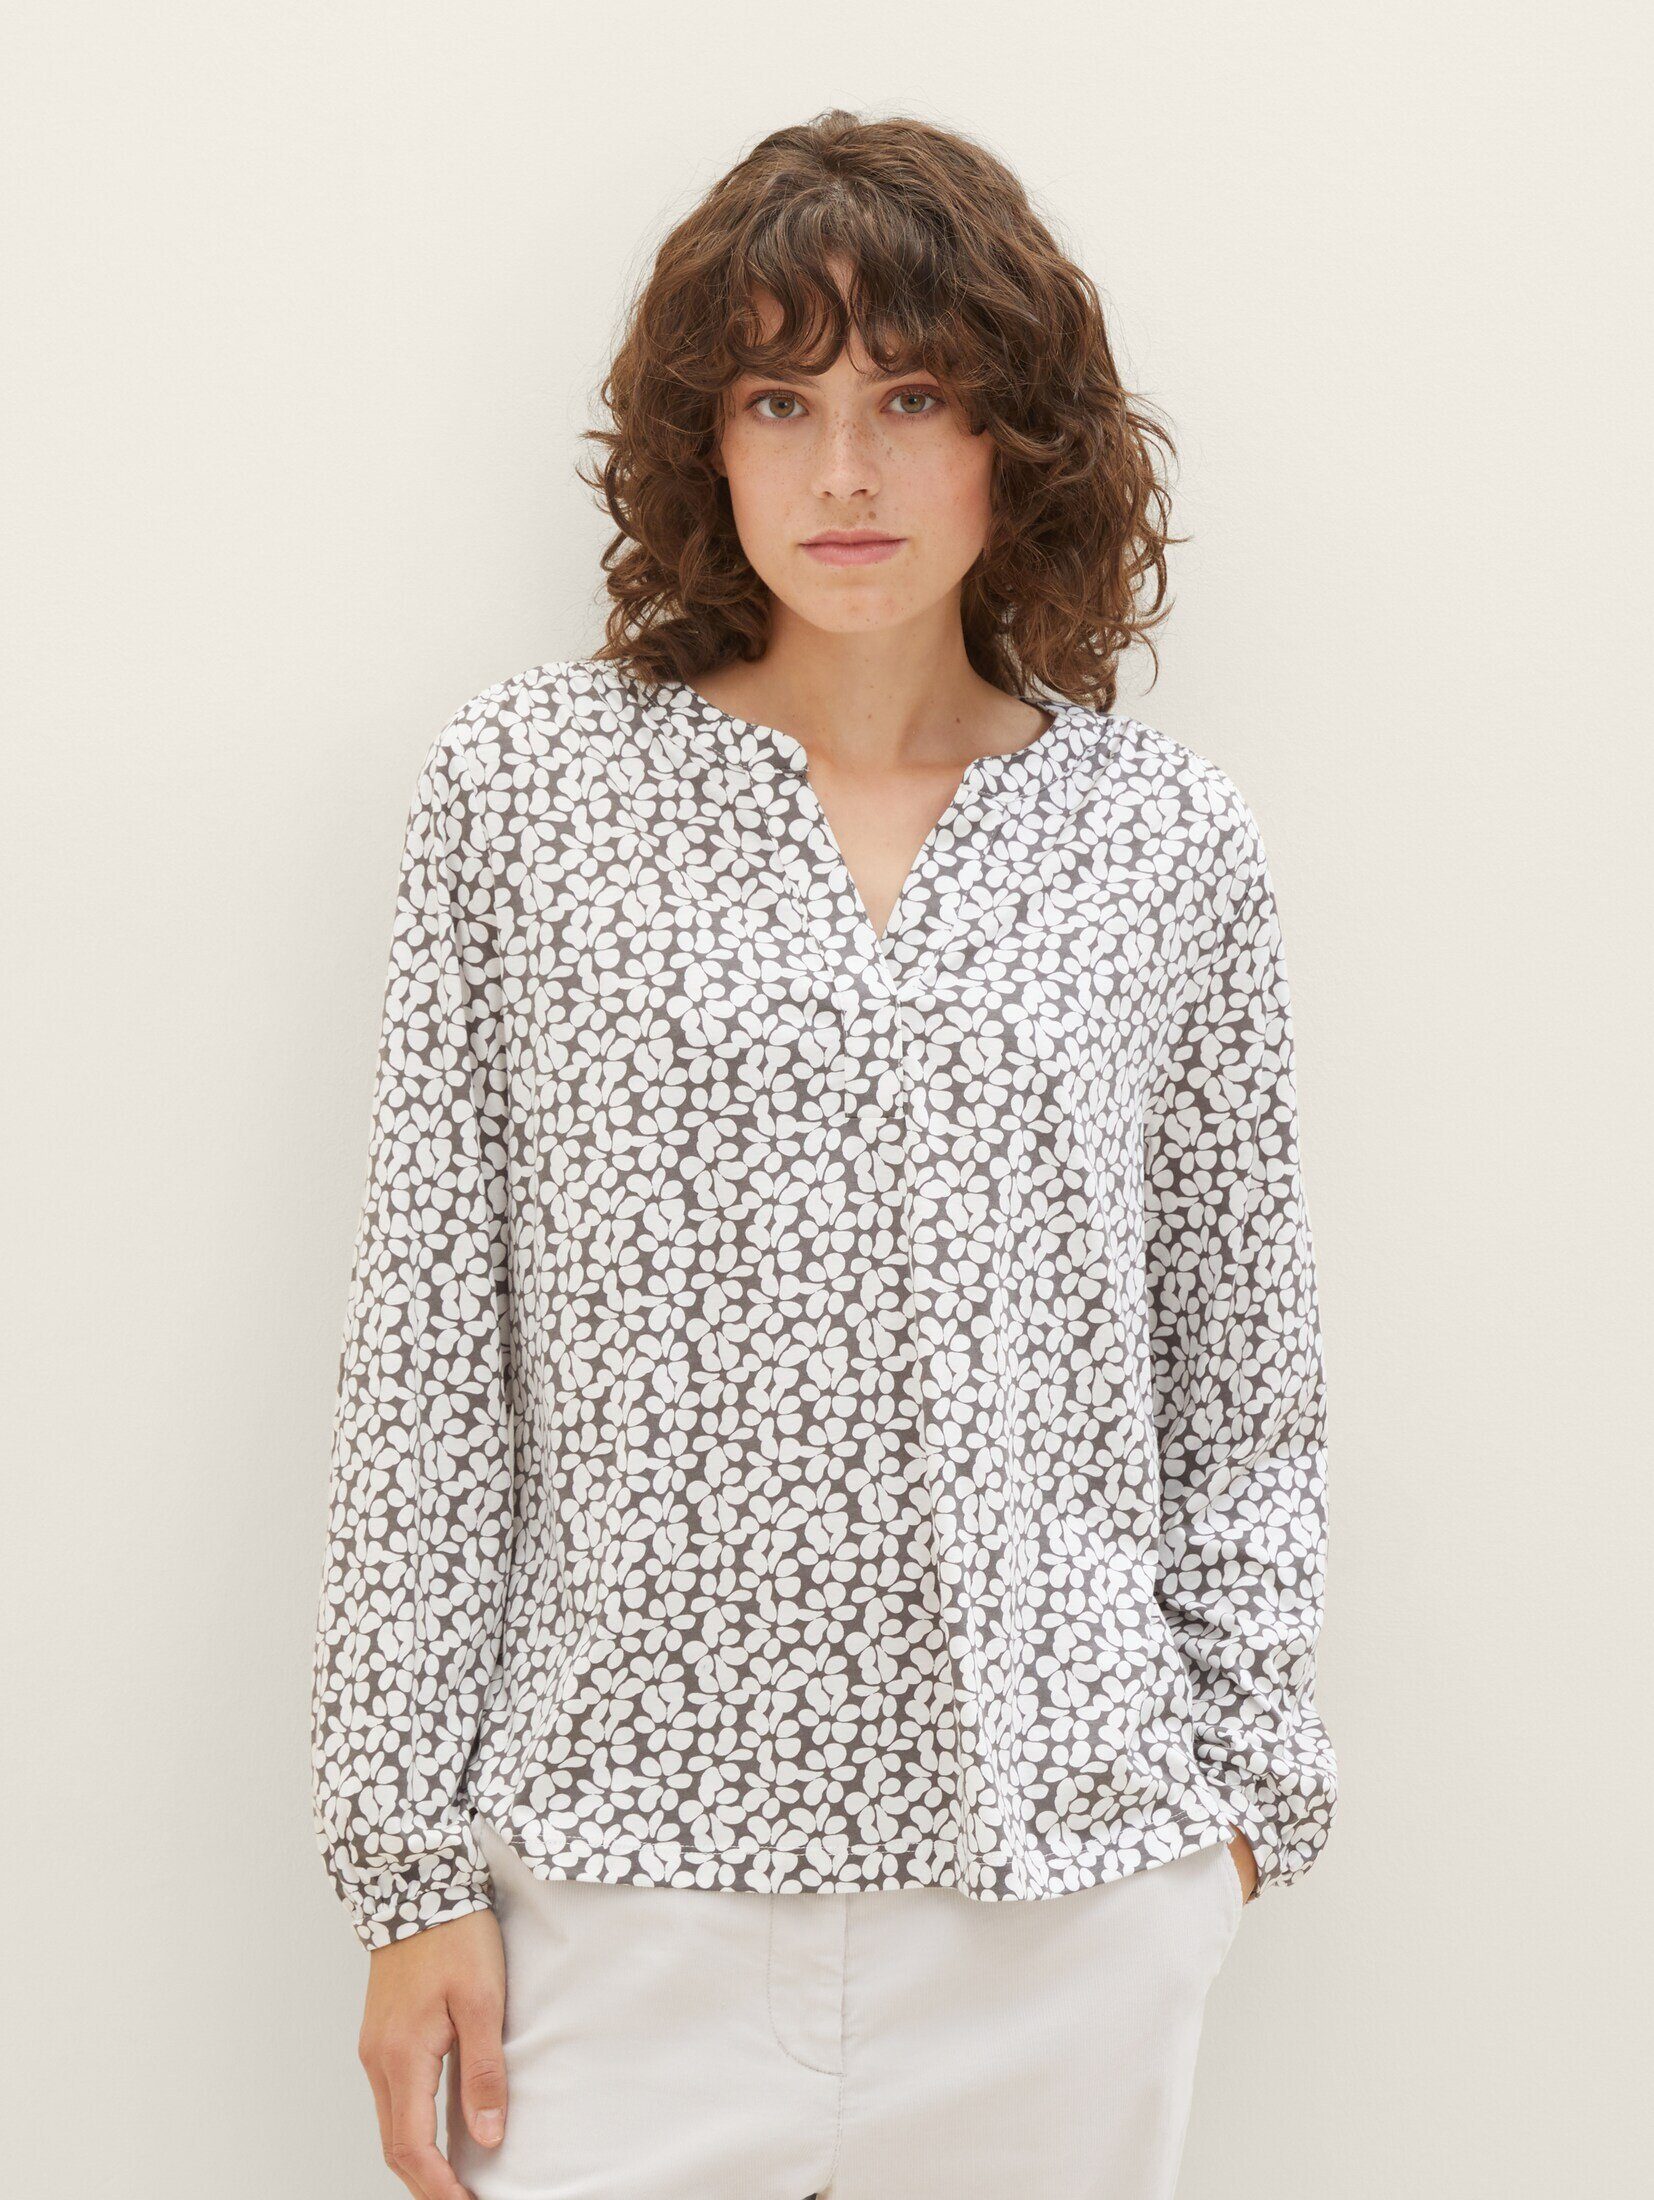 TAILOR T-Shirt grey Allover-Print design floral mit TOM Bluse